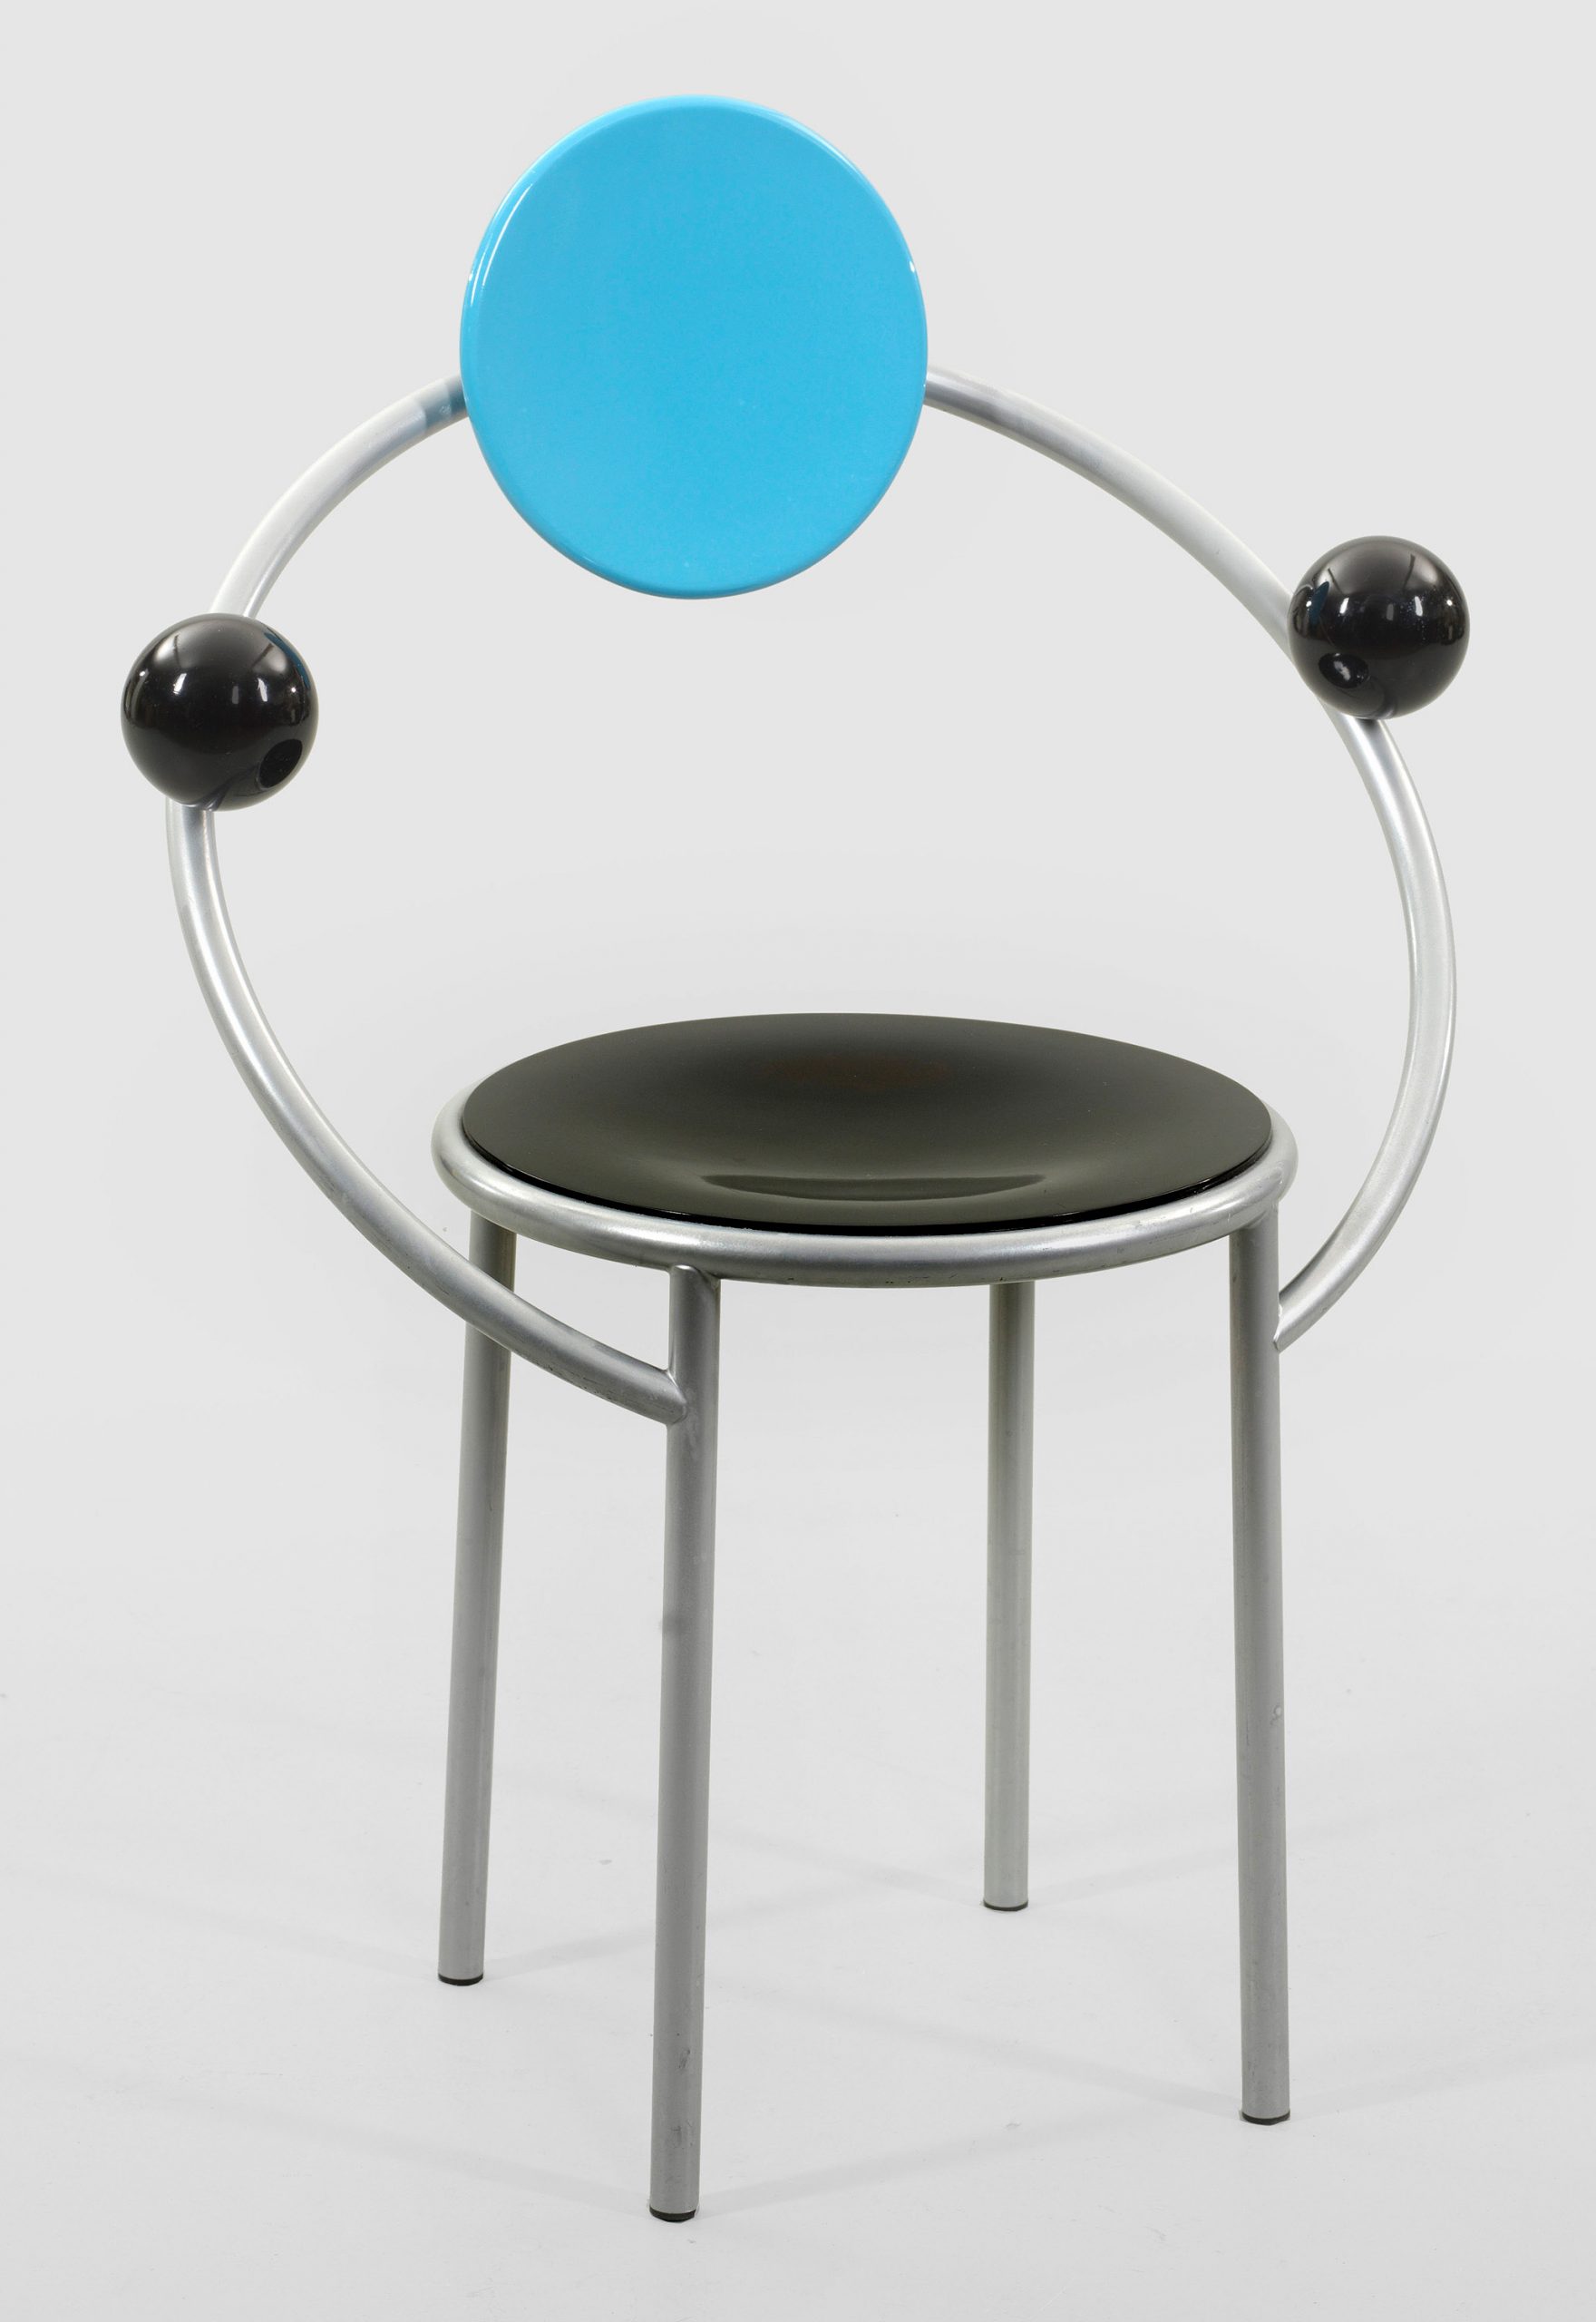 Primera silla Posmodernista creada por Michele de Lucchi